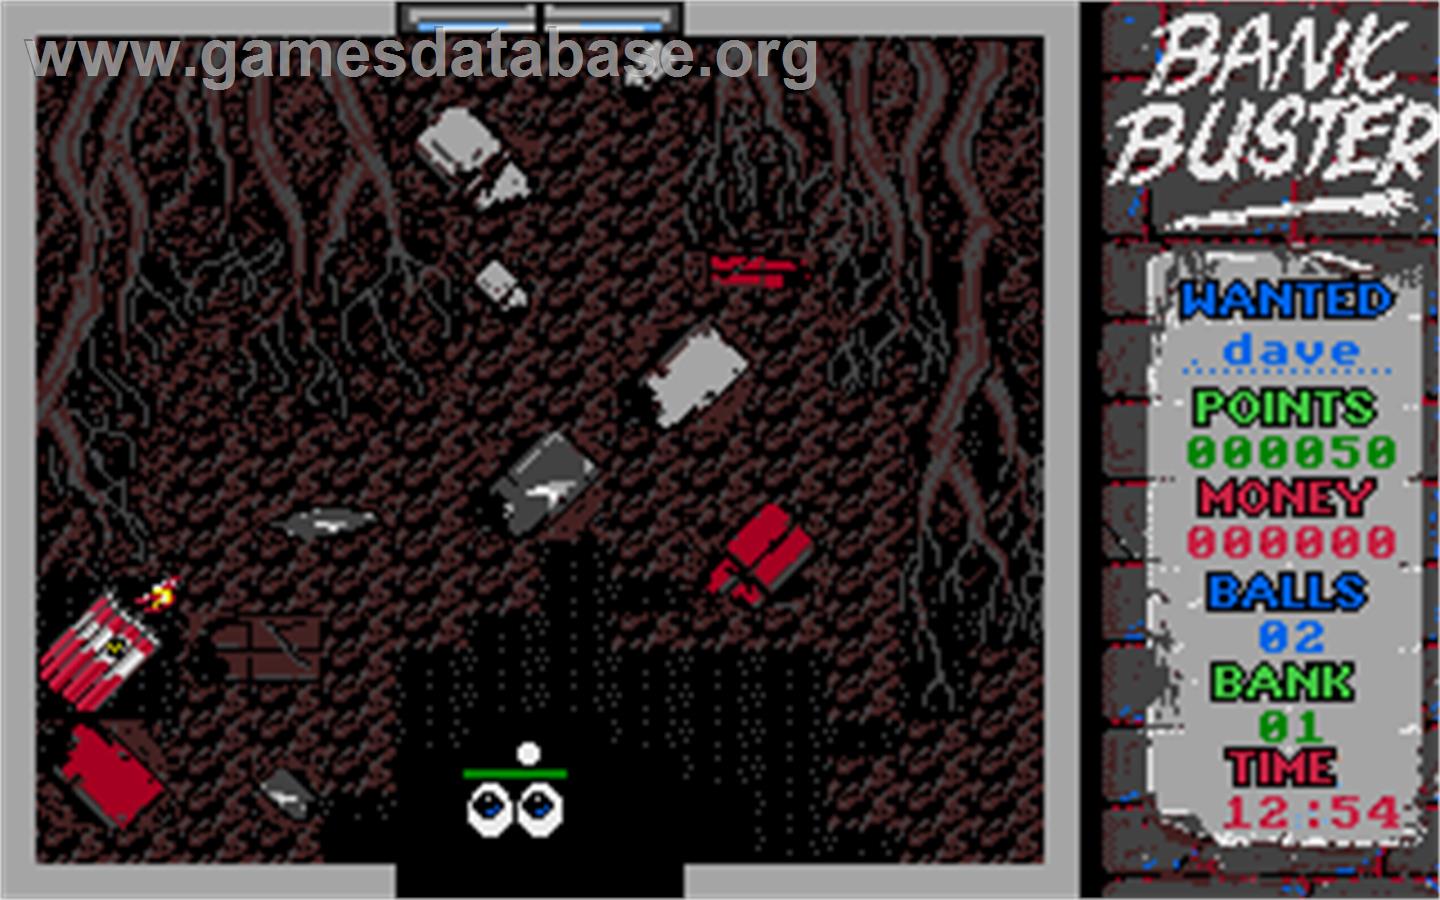 Bank Buster - Atari ST - Artwork - In Game